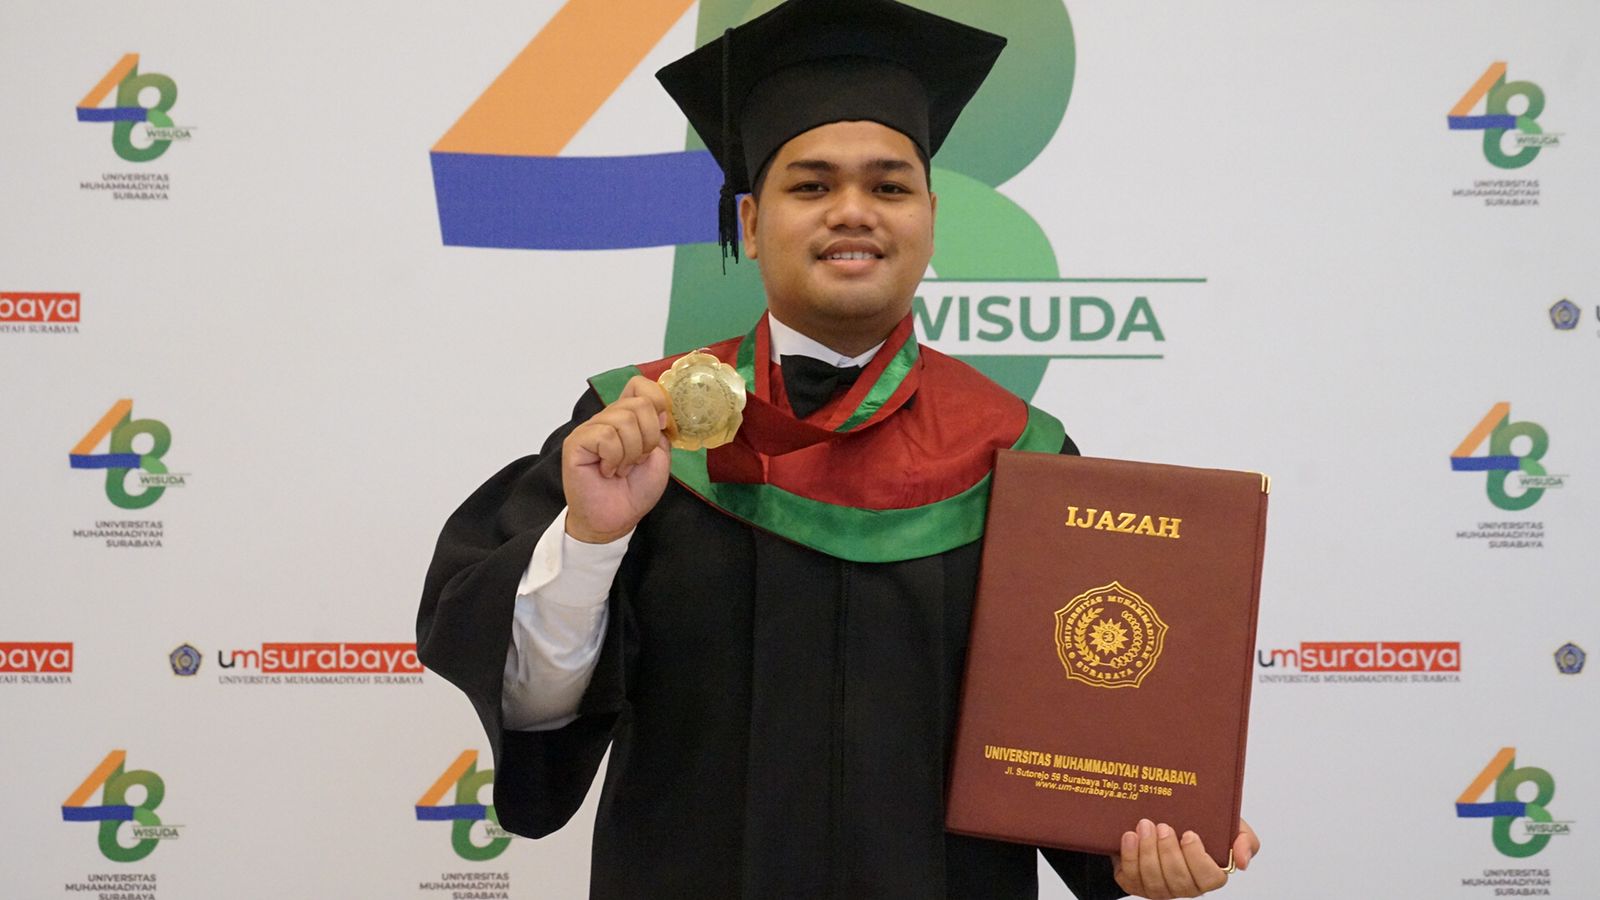 Kisah Lulusan Terbaik UM Surabaya, Diangkat Jadi Kepsek di Usia 23 Tahun